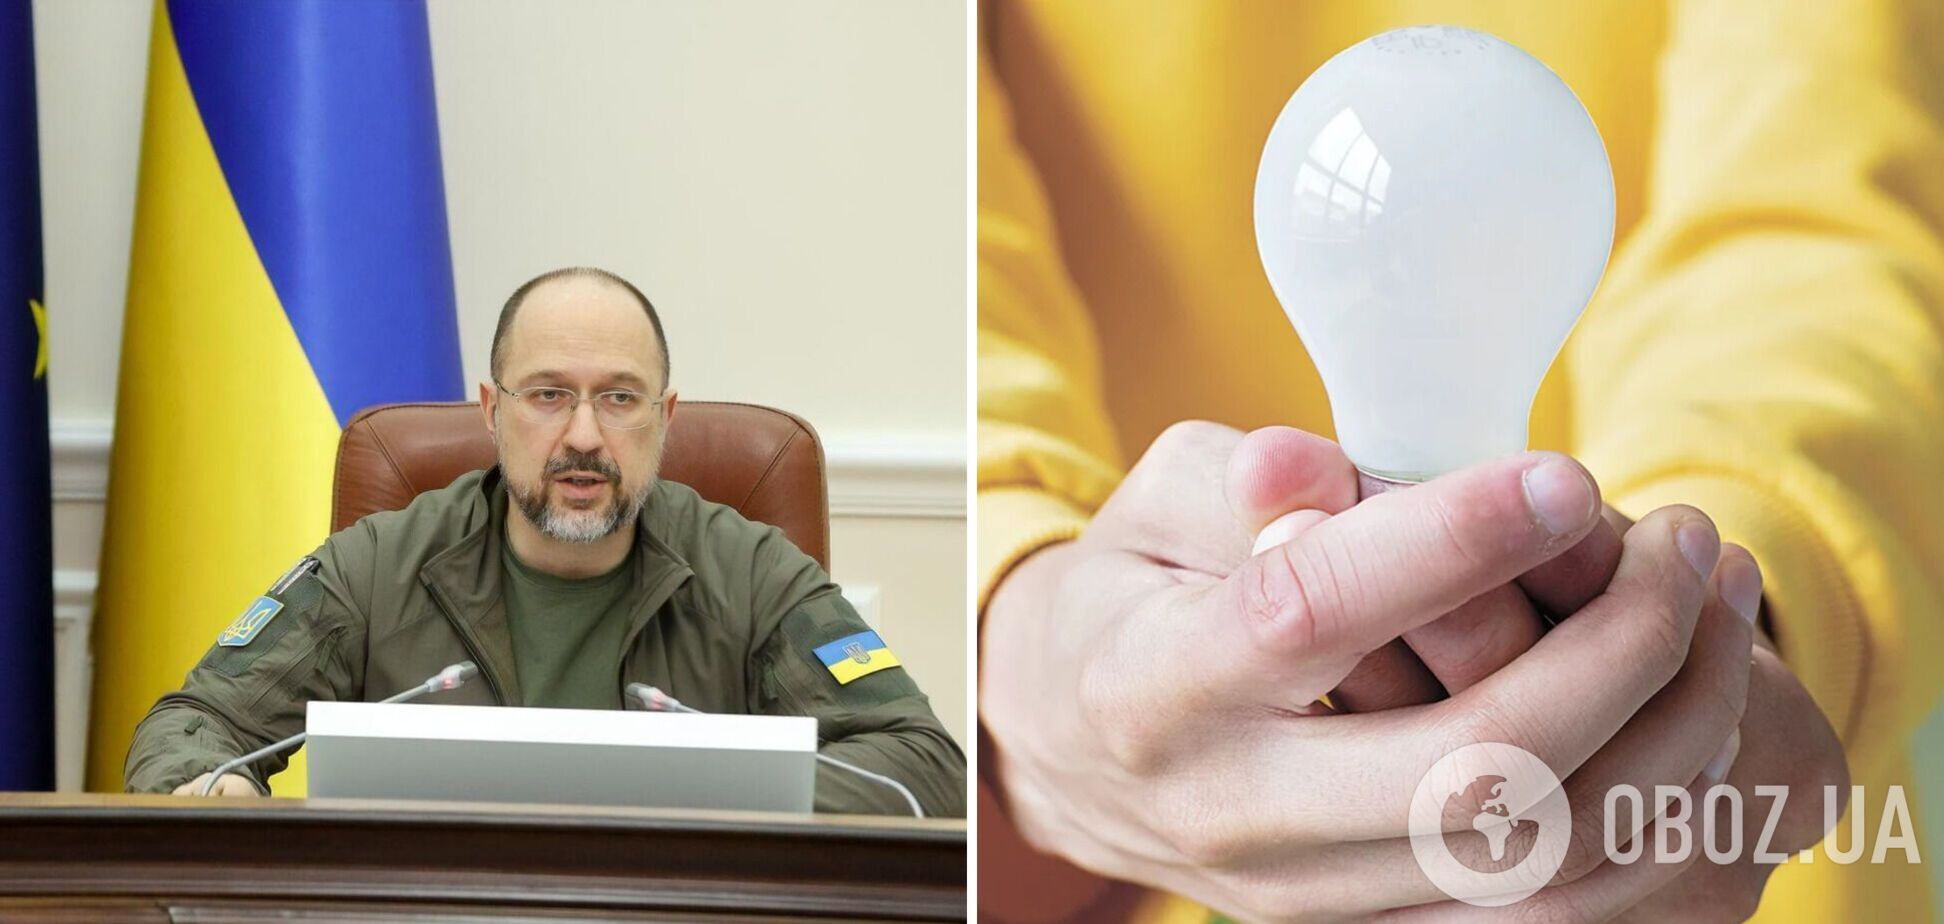 Українцям роздадуть по п'ять LED-ламп